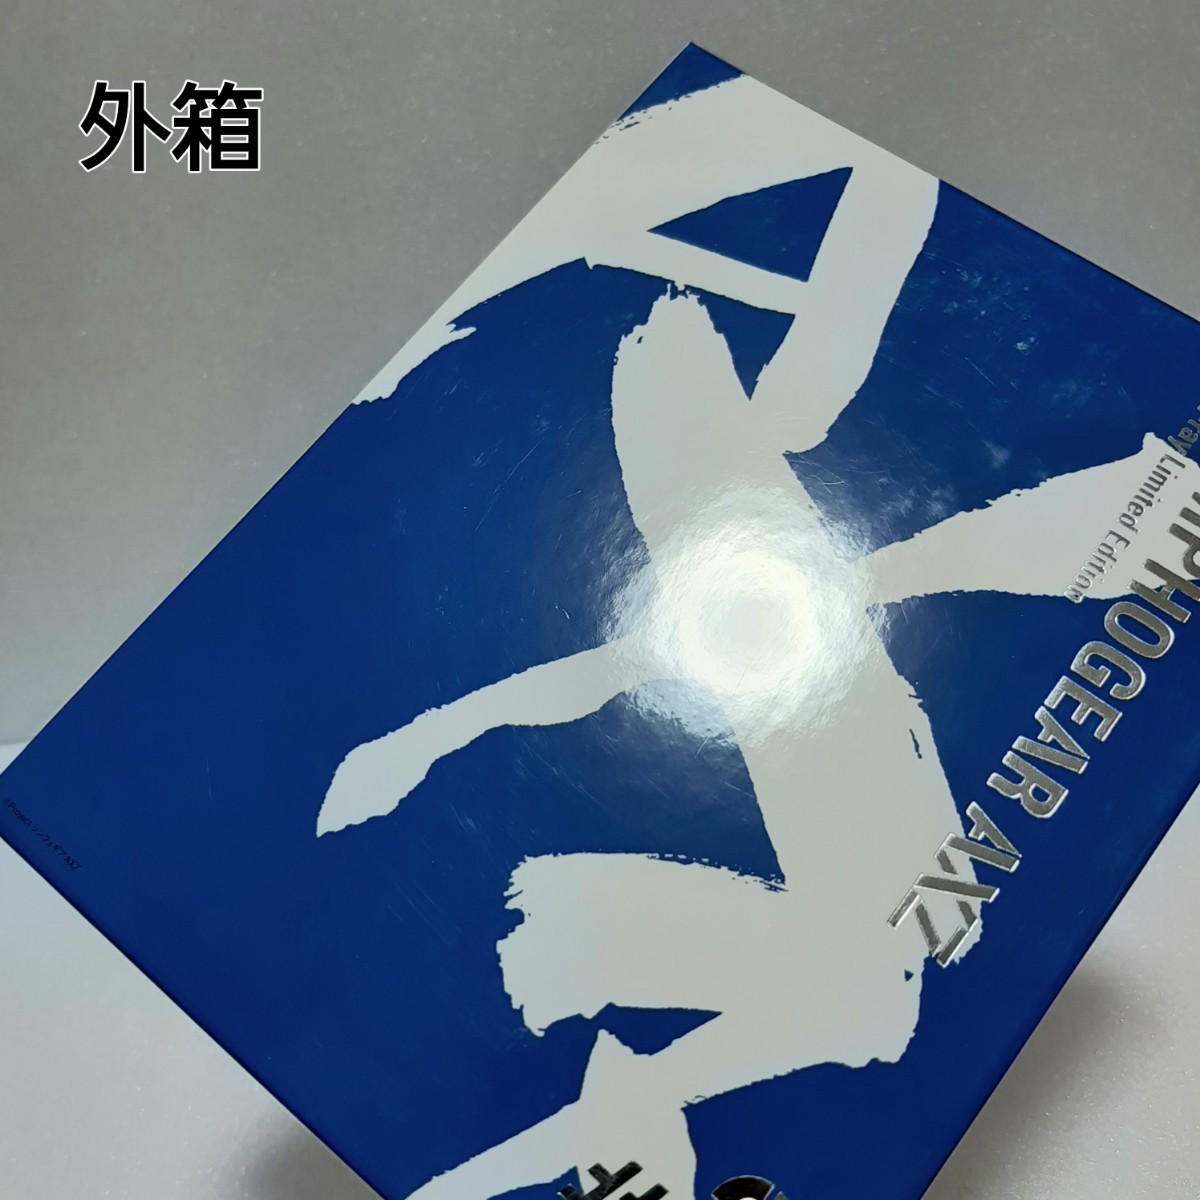 戦姫絶唱シンフォギアAXZ #2 Blu-ray+ボーナスCDの画像6